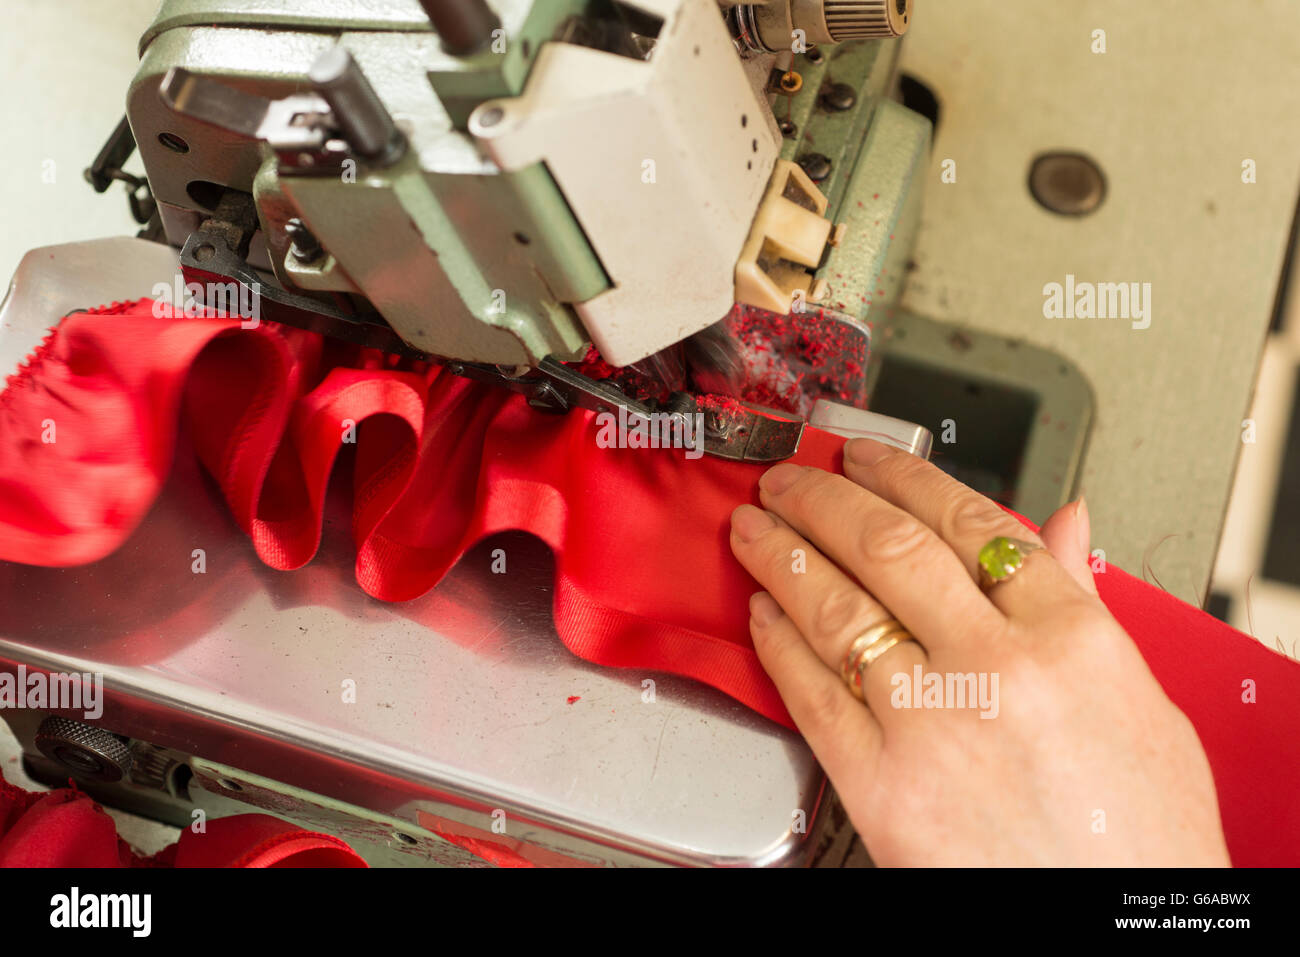 La main d'un tailleur soutenant un morceau de tissu froissé d'être dans une machine à coudre Banque D'Images